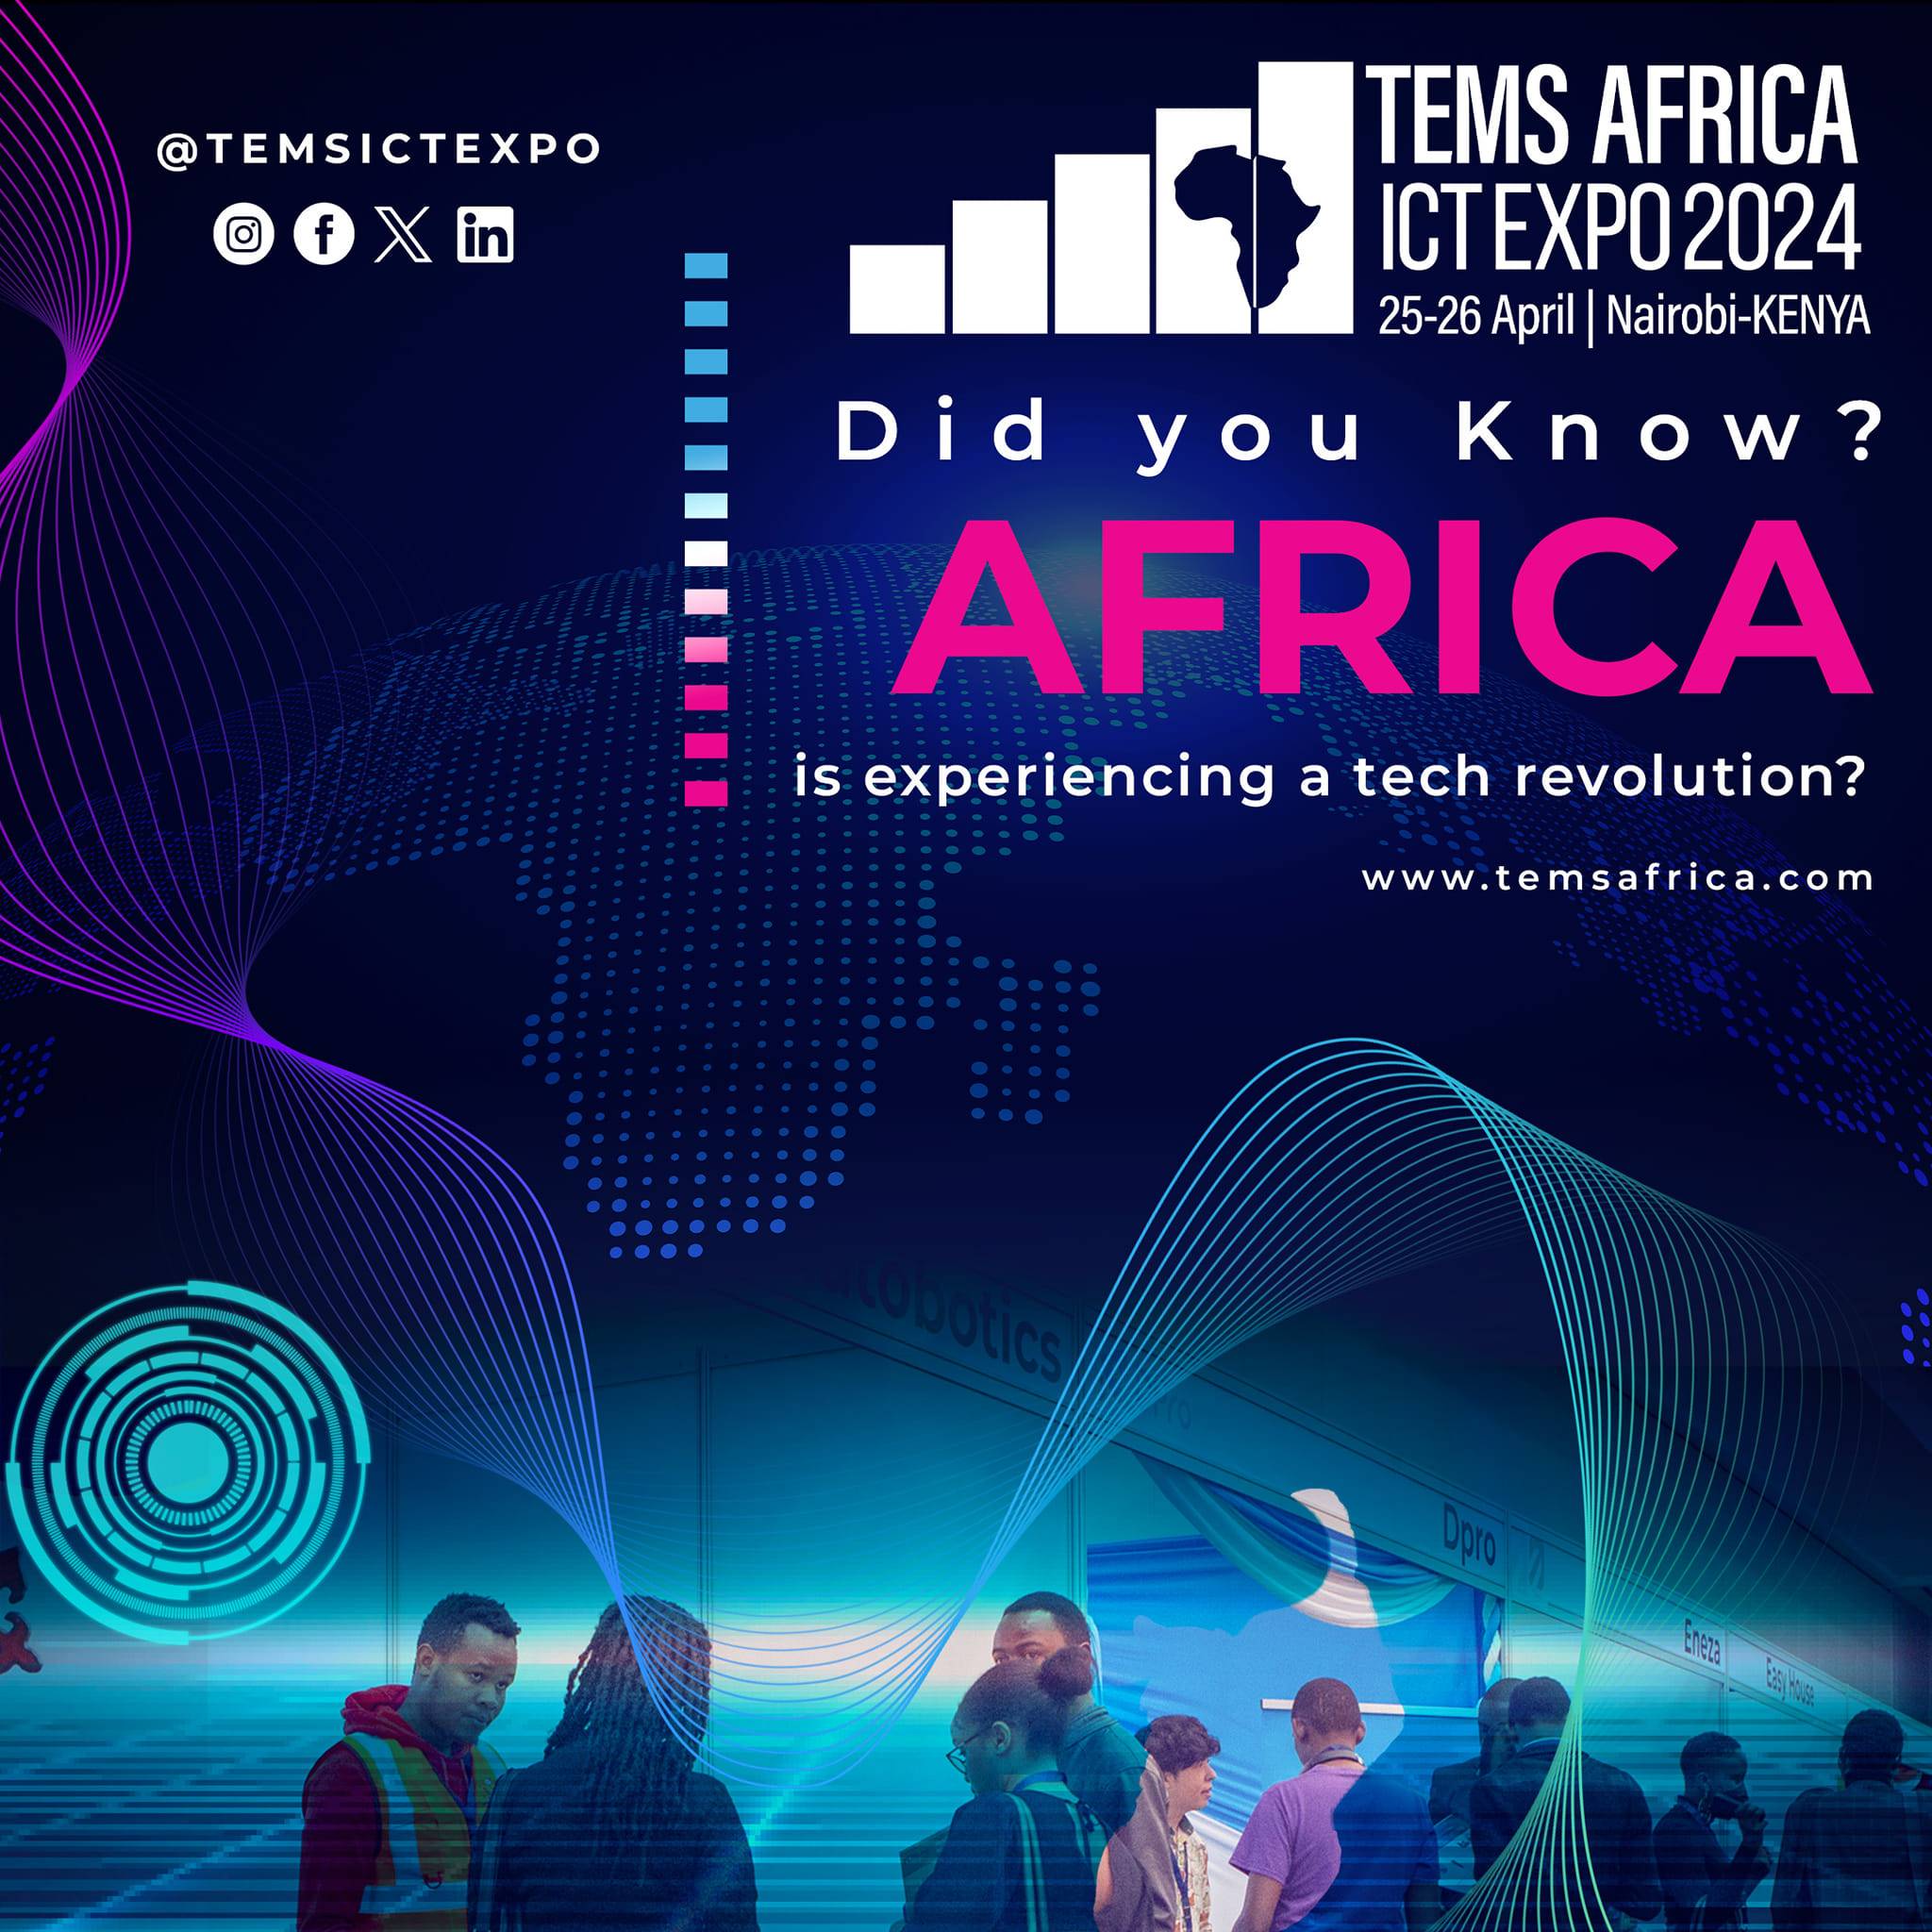 Fintech in Africa